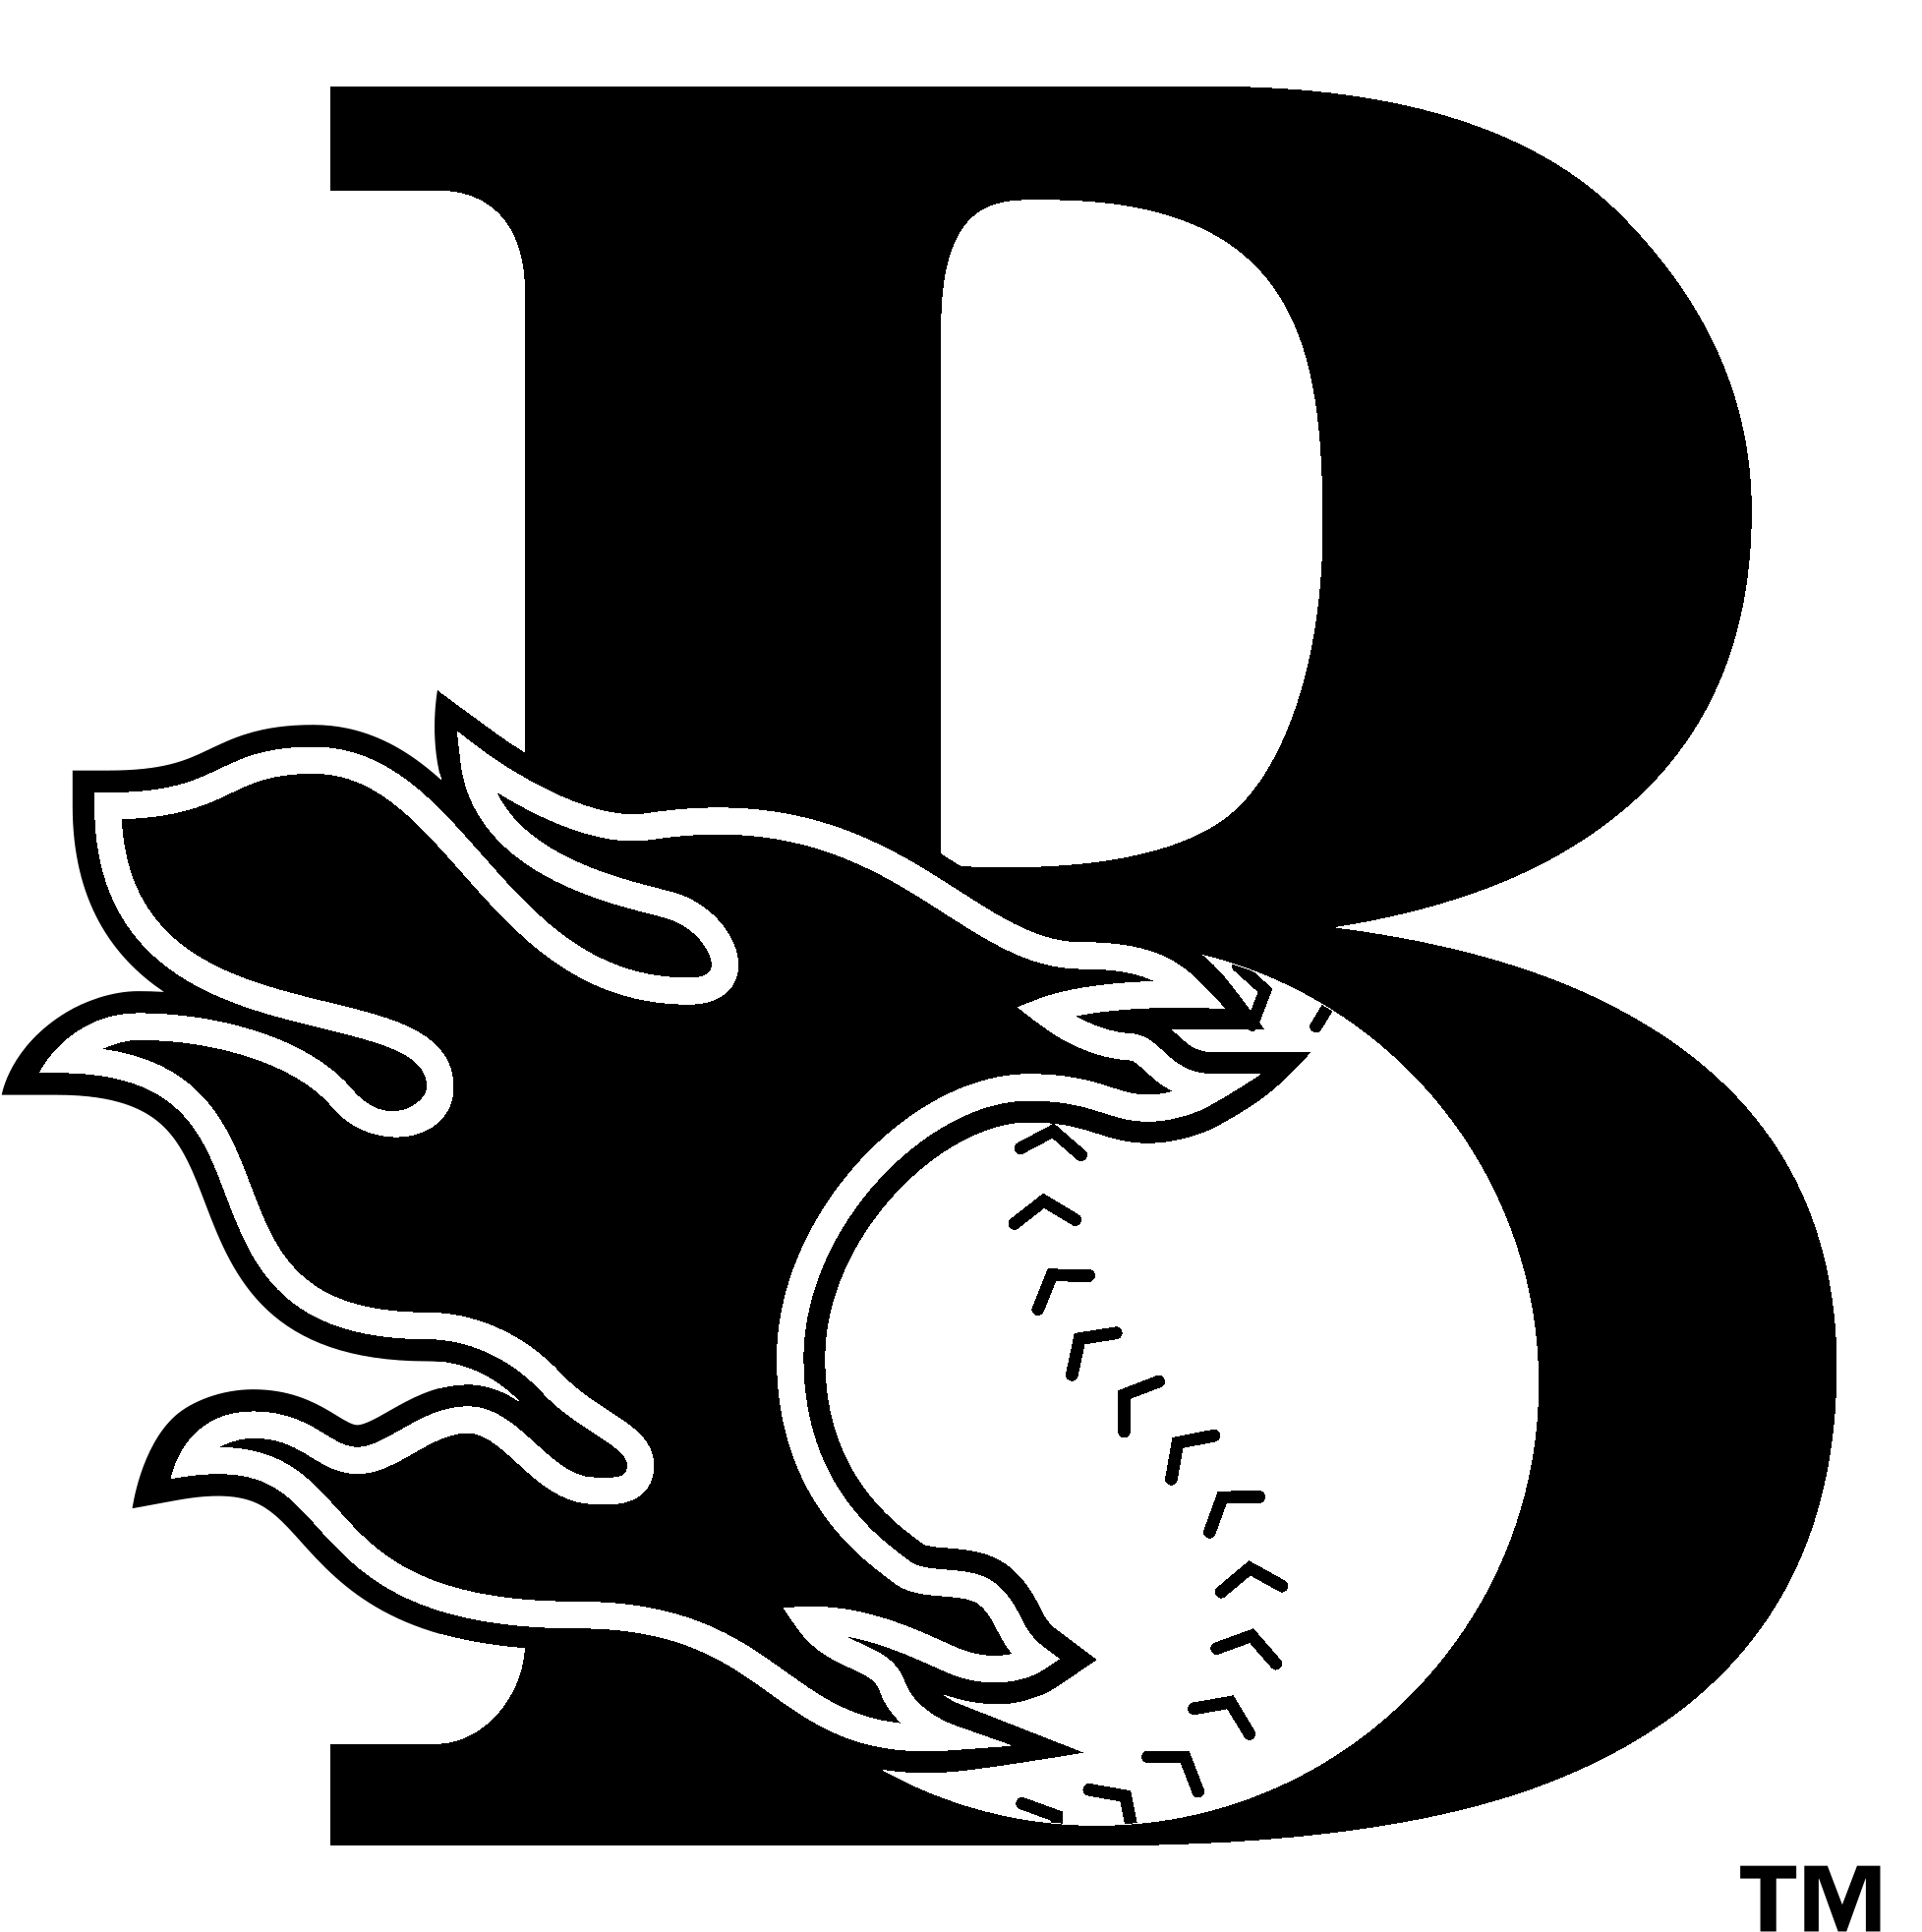 Bakersfield Blaze Logo - Bakersfield Blaze Logo Black And White - Bakersfield Blaze Logo ...